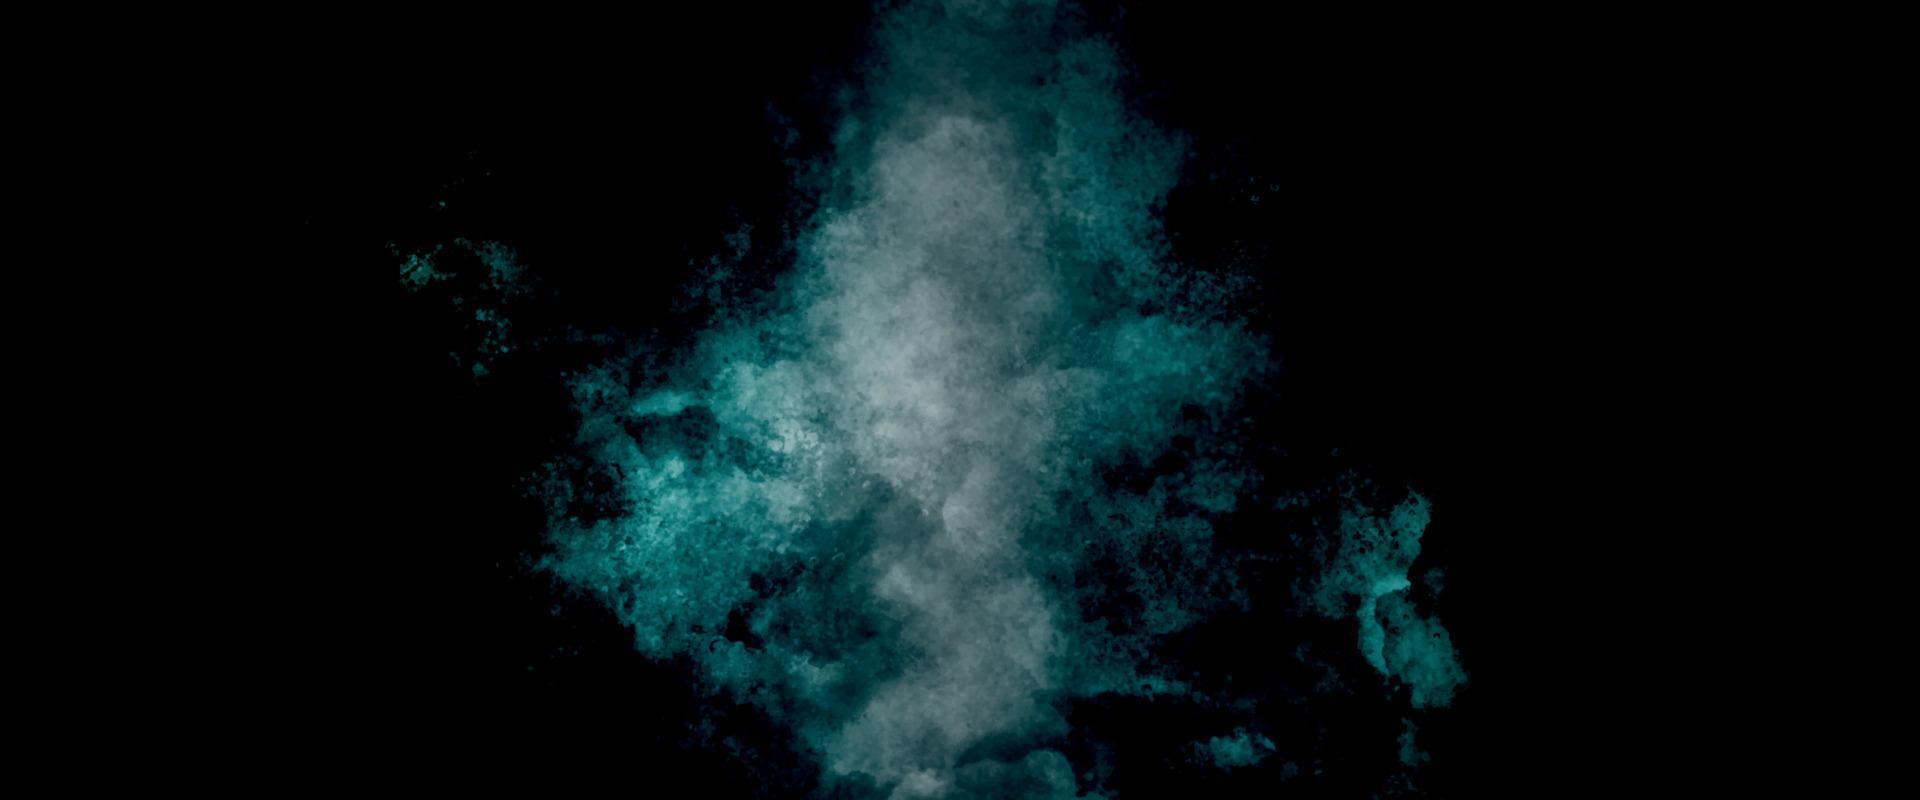 sfondo con nuvole. vecchio Vintage ▾ blu verde sfondo con afflitto struttura e grunge design con nero confine. cosmico neon polare luci acquerello sfondo vettore